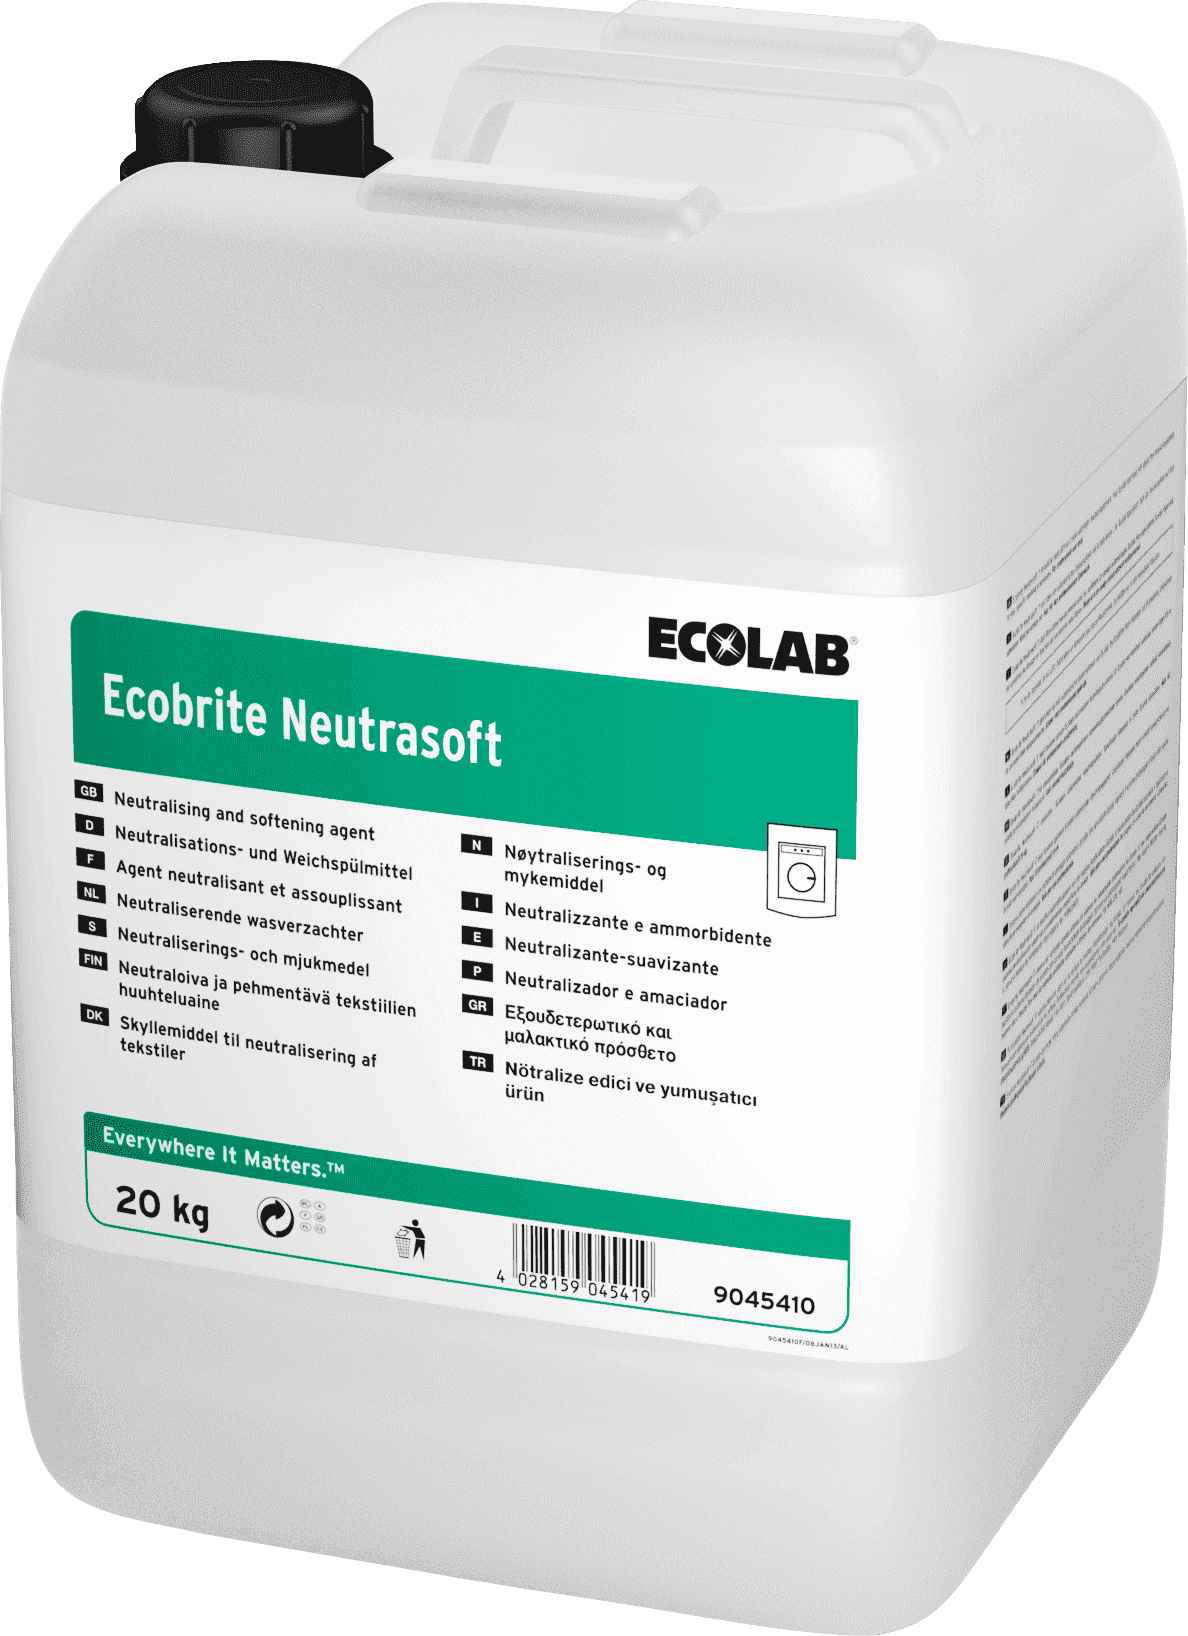 Ecolab Ecobrite Neutrasoft жидкий профессиональный кондиционер-ополаскиватель, Клингард 0